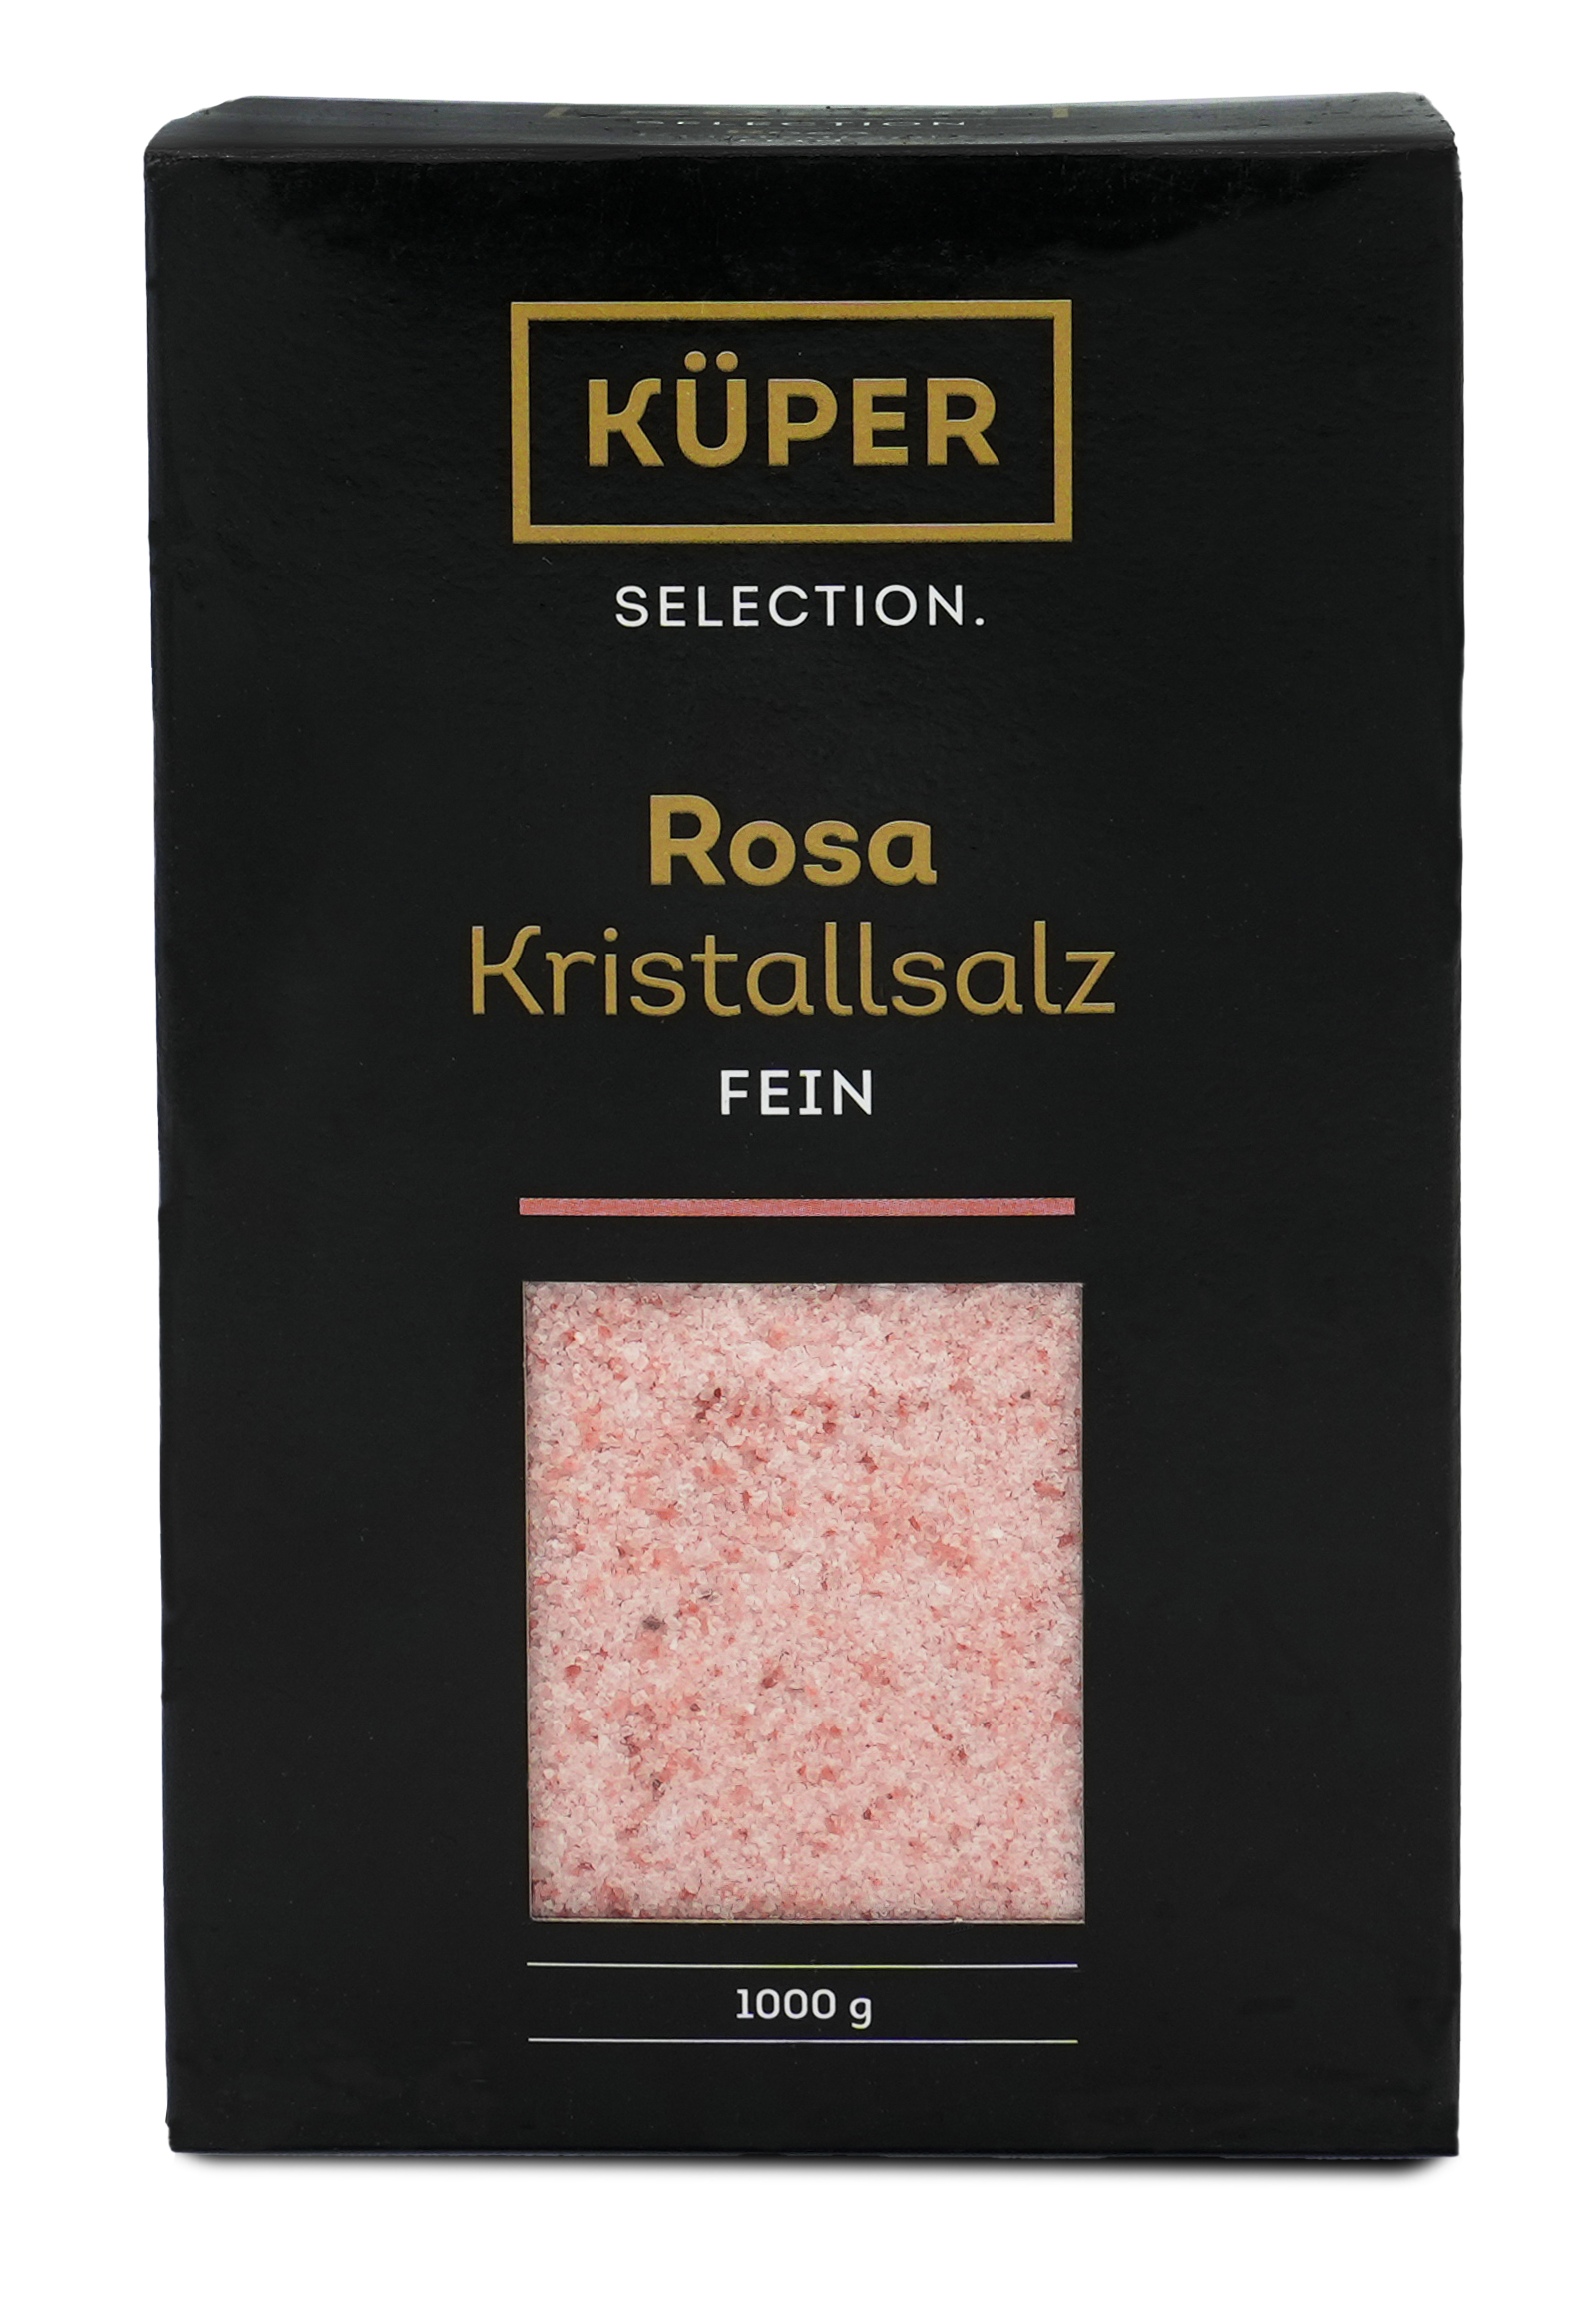 Rosa Kristallsalz fein | Küper Selection | 1000g | 100% natürlich | zum Würzen und Verfeinern von Gerichten